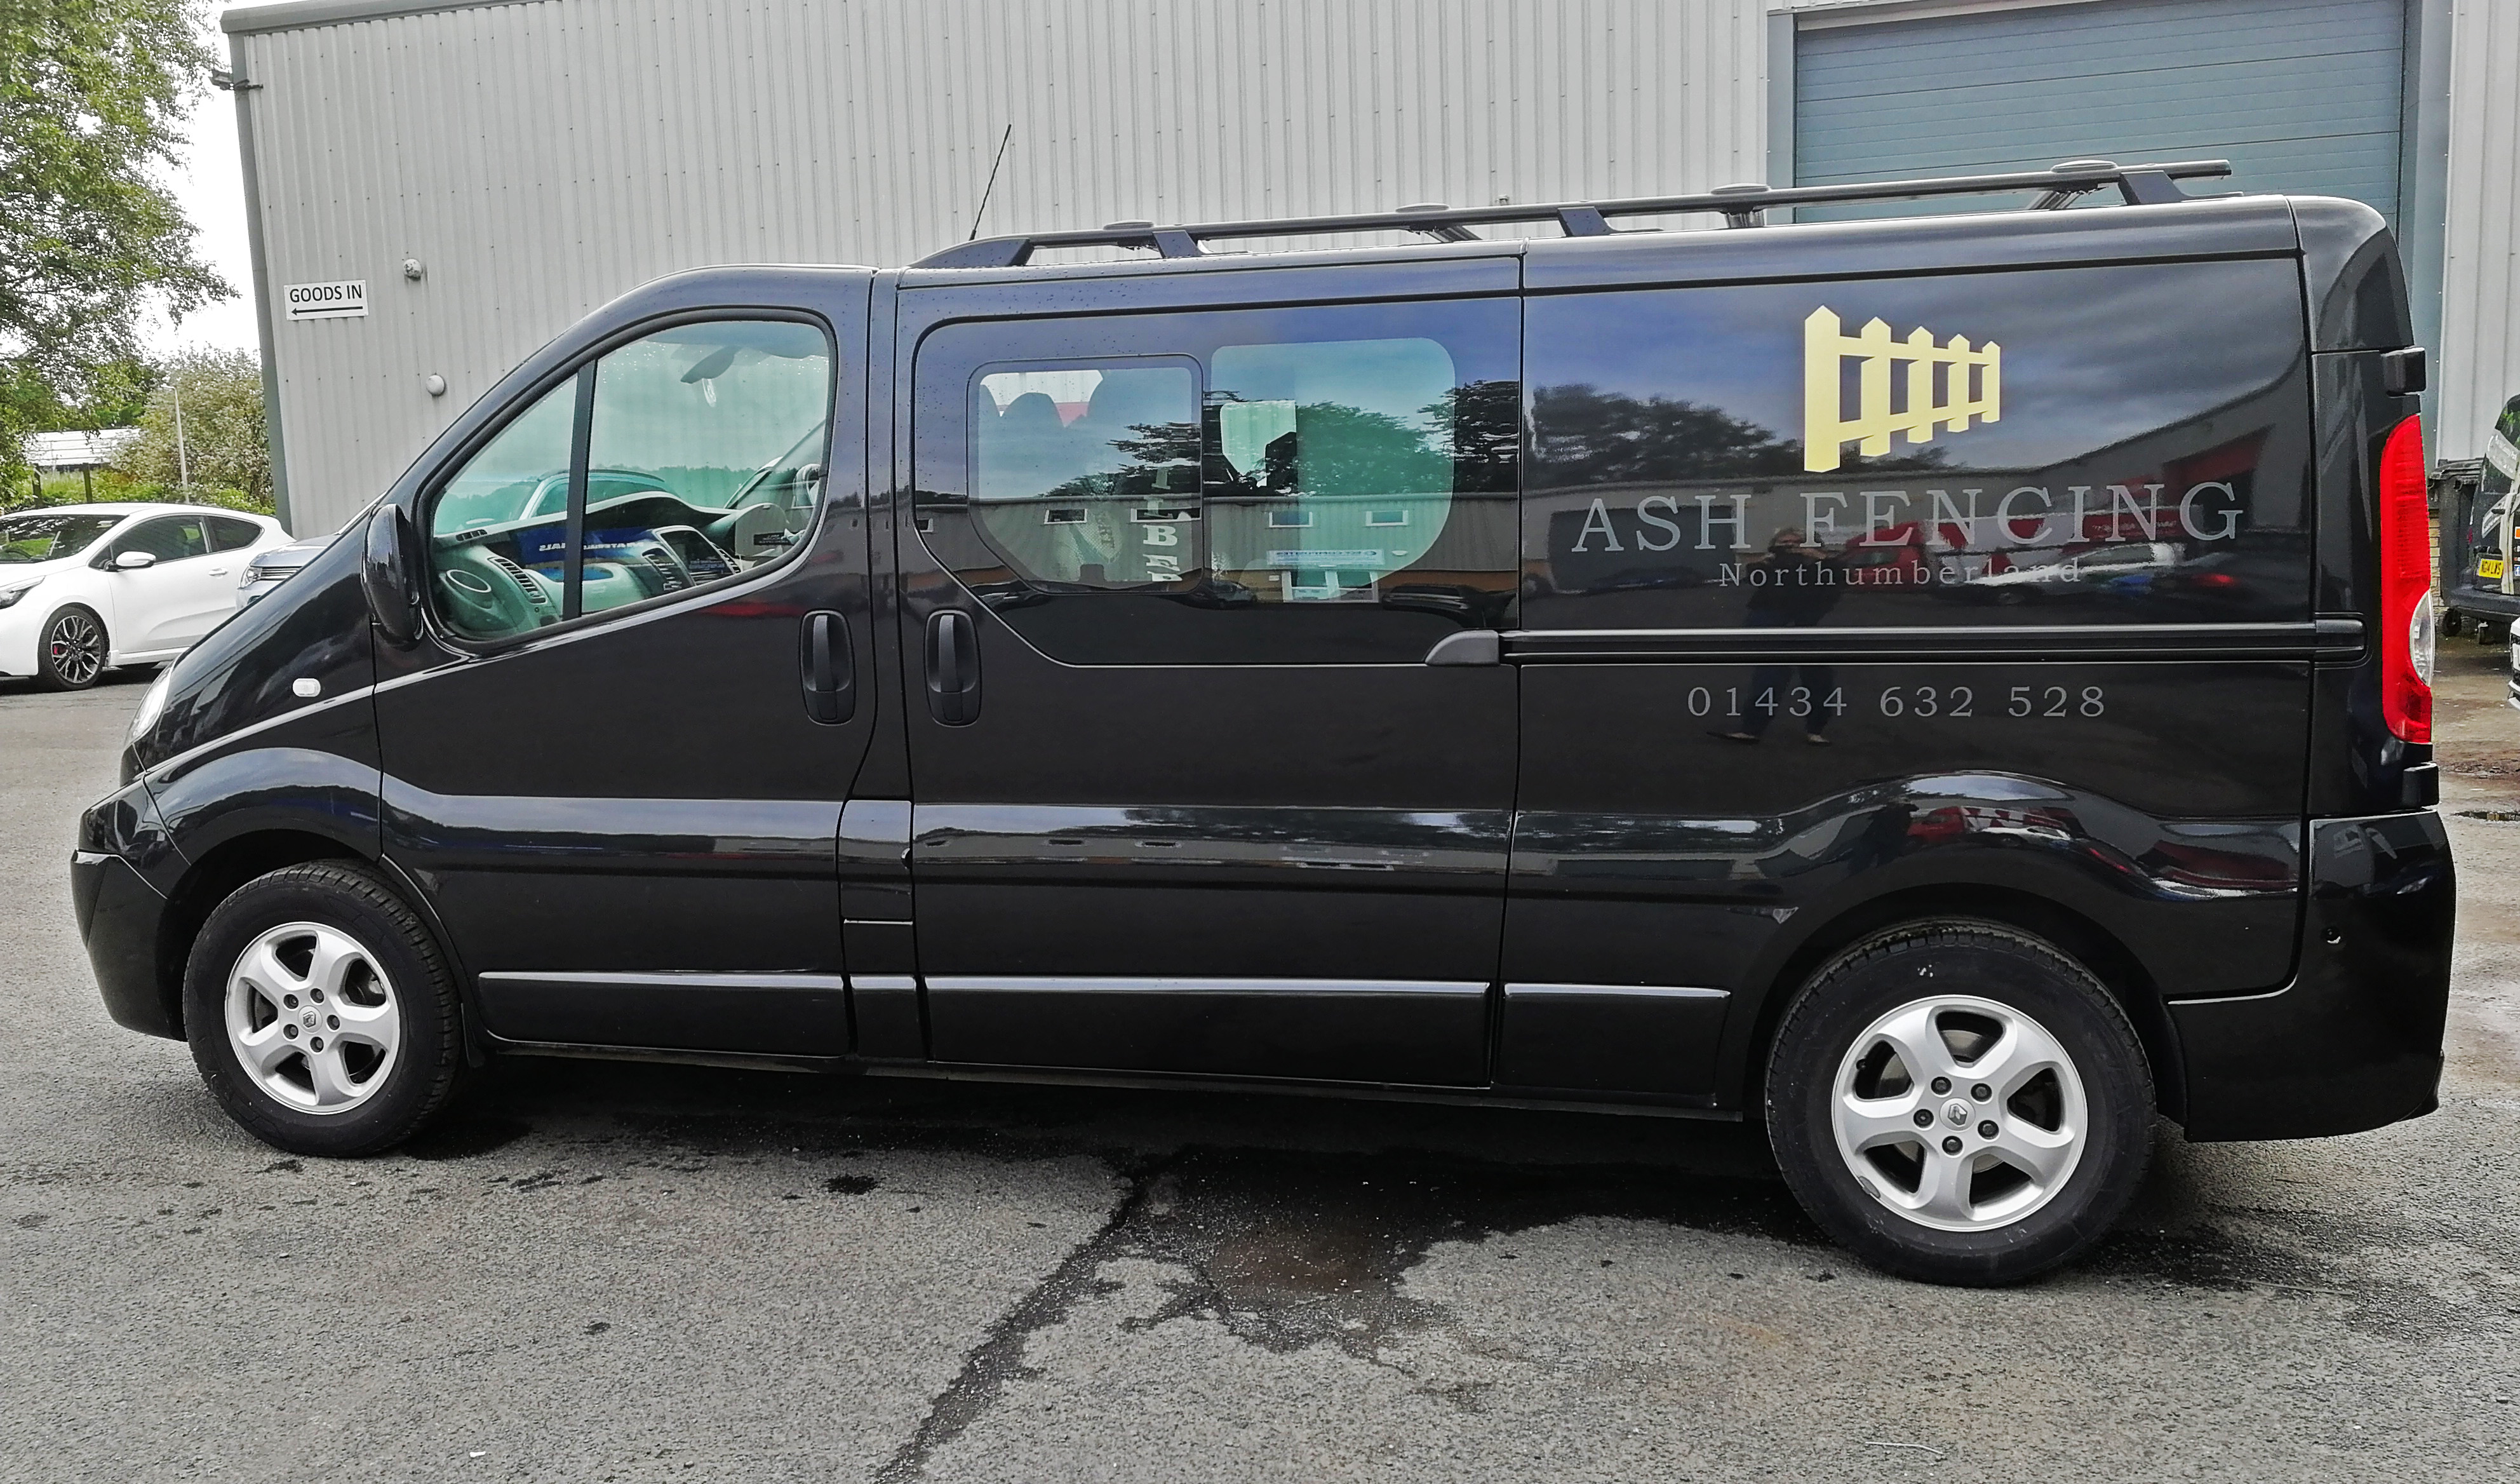 Ash-Fencing-Van3